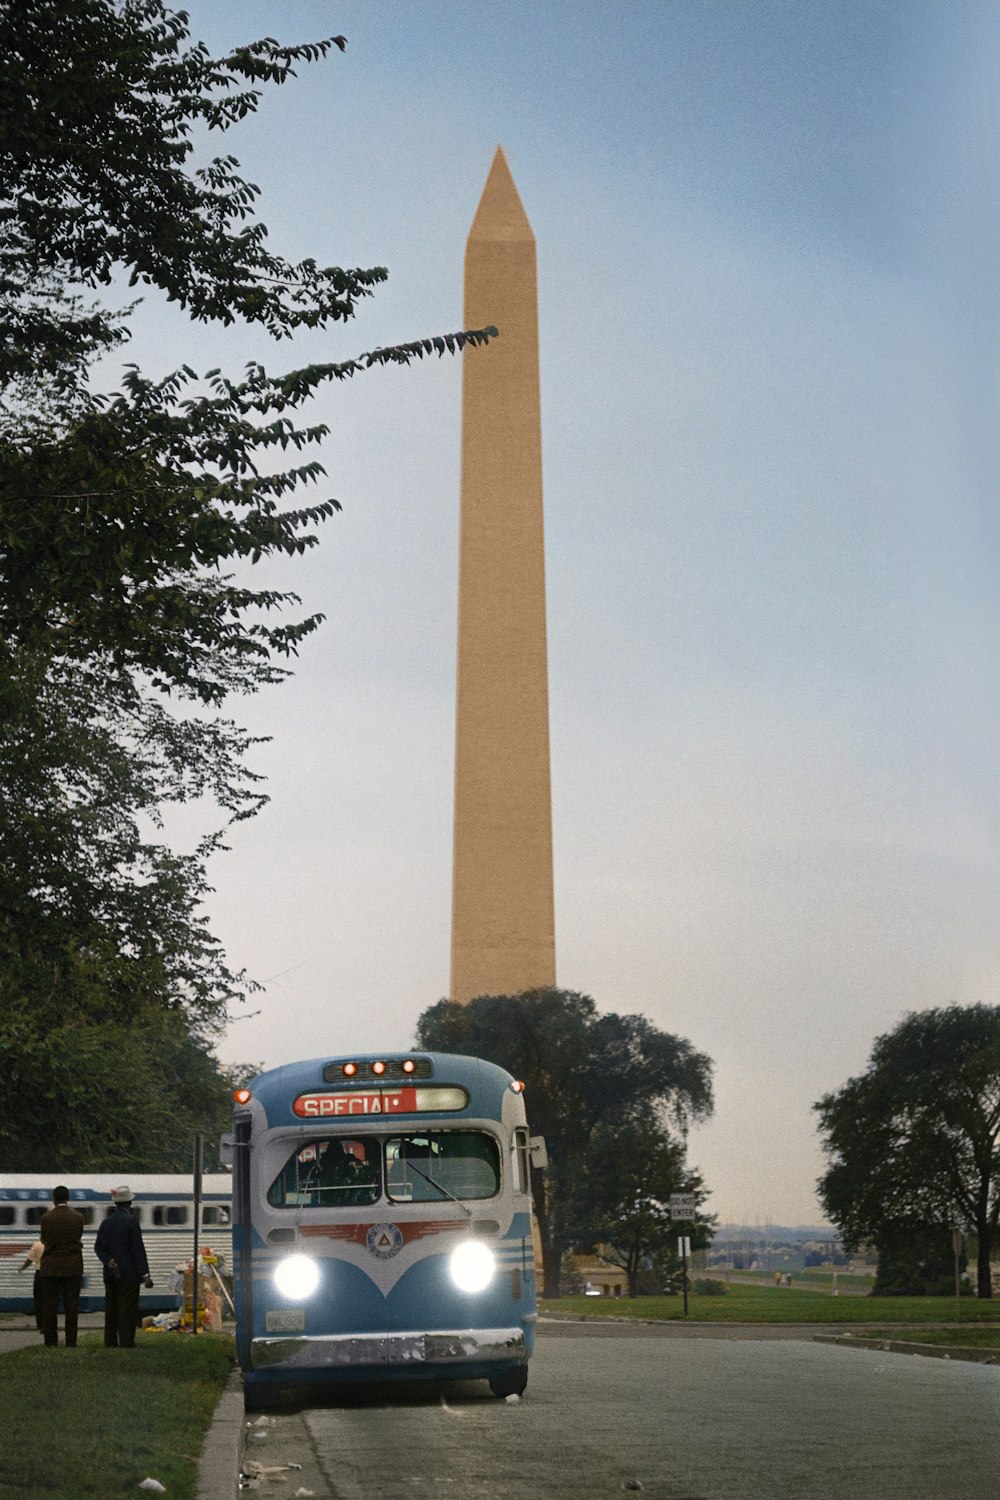 Des bus partent devant le Washington Monument après la marche des droits civiques sur Washington, D.C.